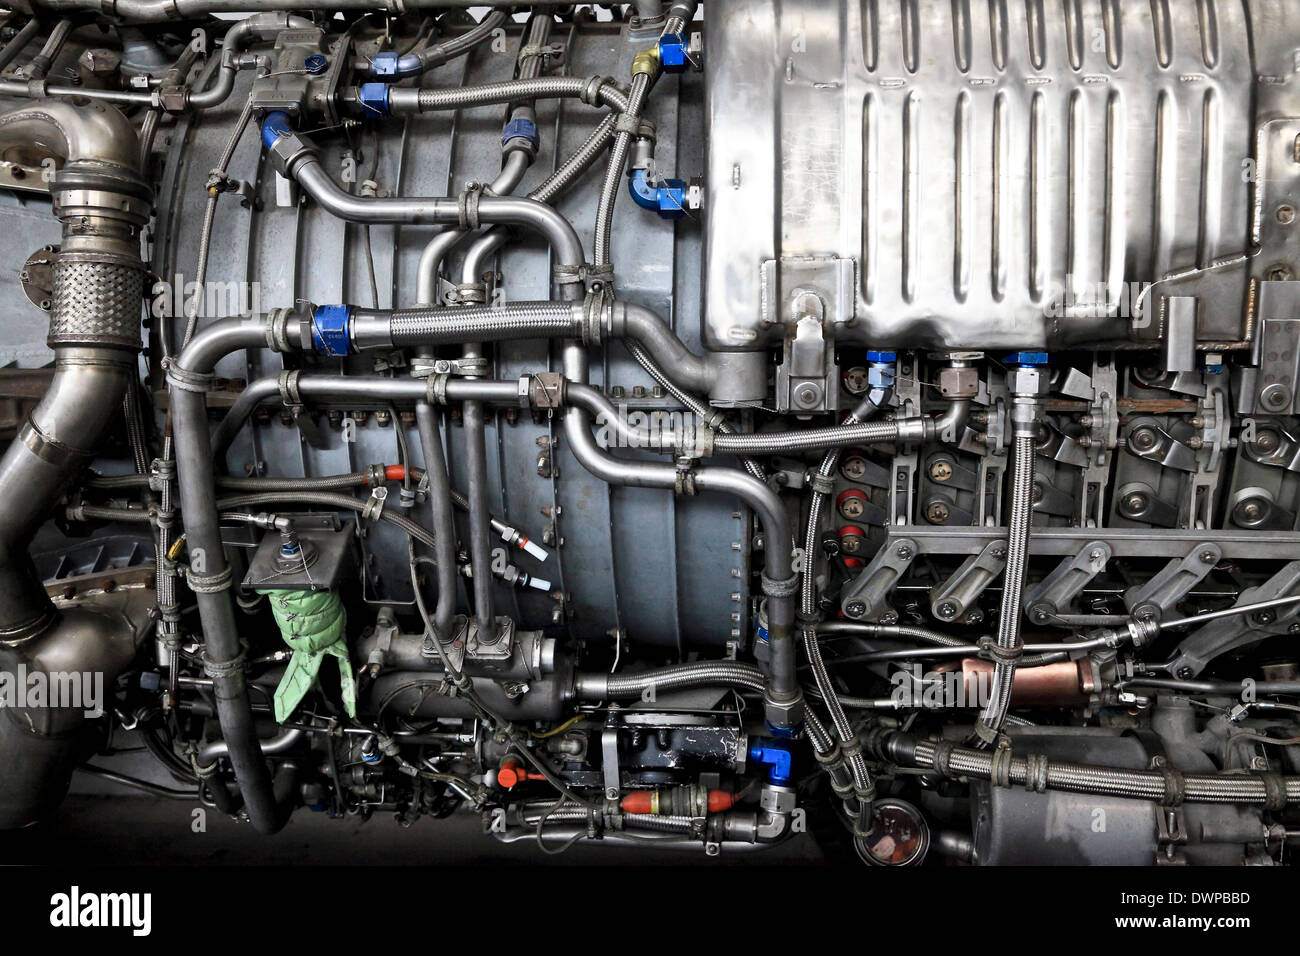 9381. Générale électrique du ventilateur Turbo Jet moteur J79-GE-10, Musée Manston, Manston Kent, Angleterre Banque D'Images